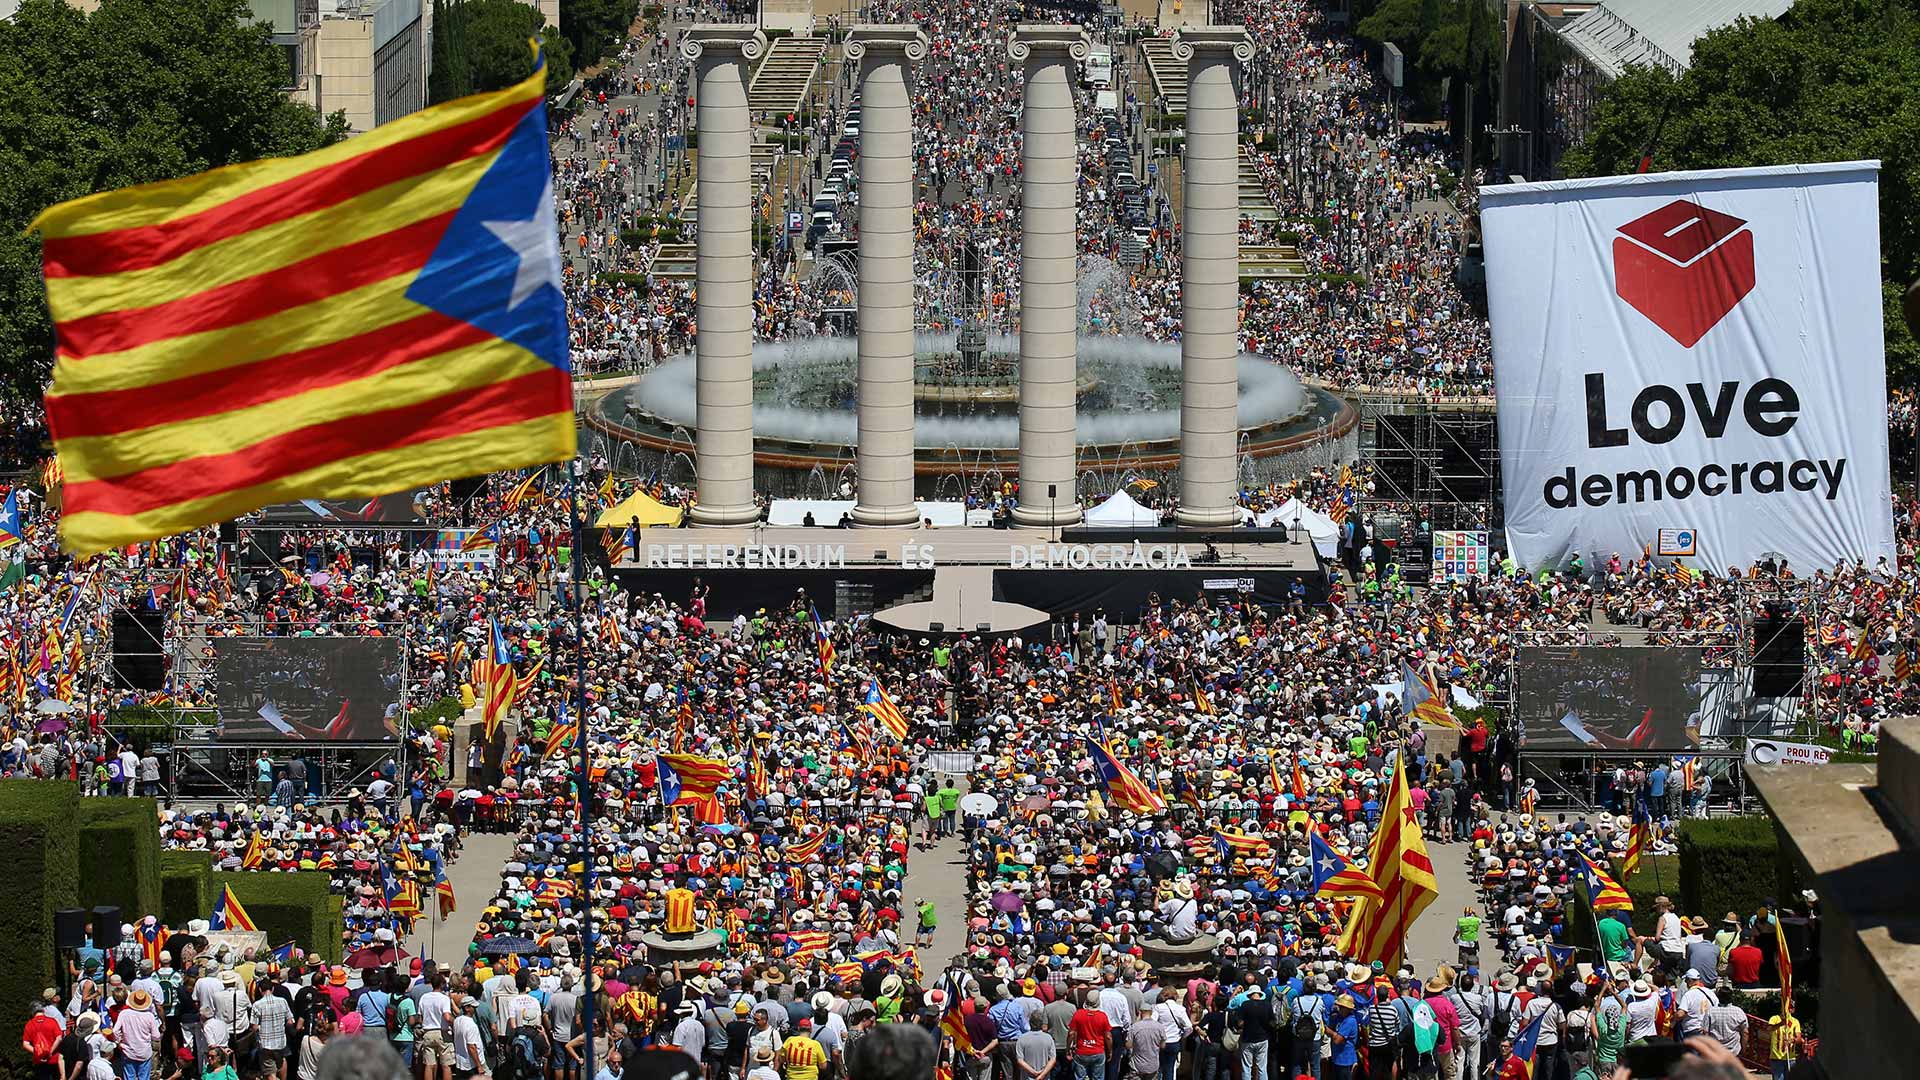 Ξεσηκωμός στην Καταλονία μετά την κατάργηση της αυτονομίας της από την Μαδρίτη: Χιλιάδες άνθρωποι στους δρόμους (βίντεο)